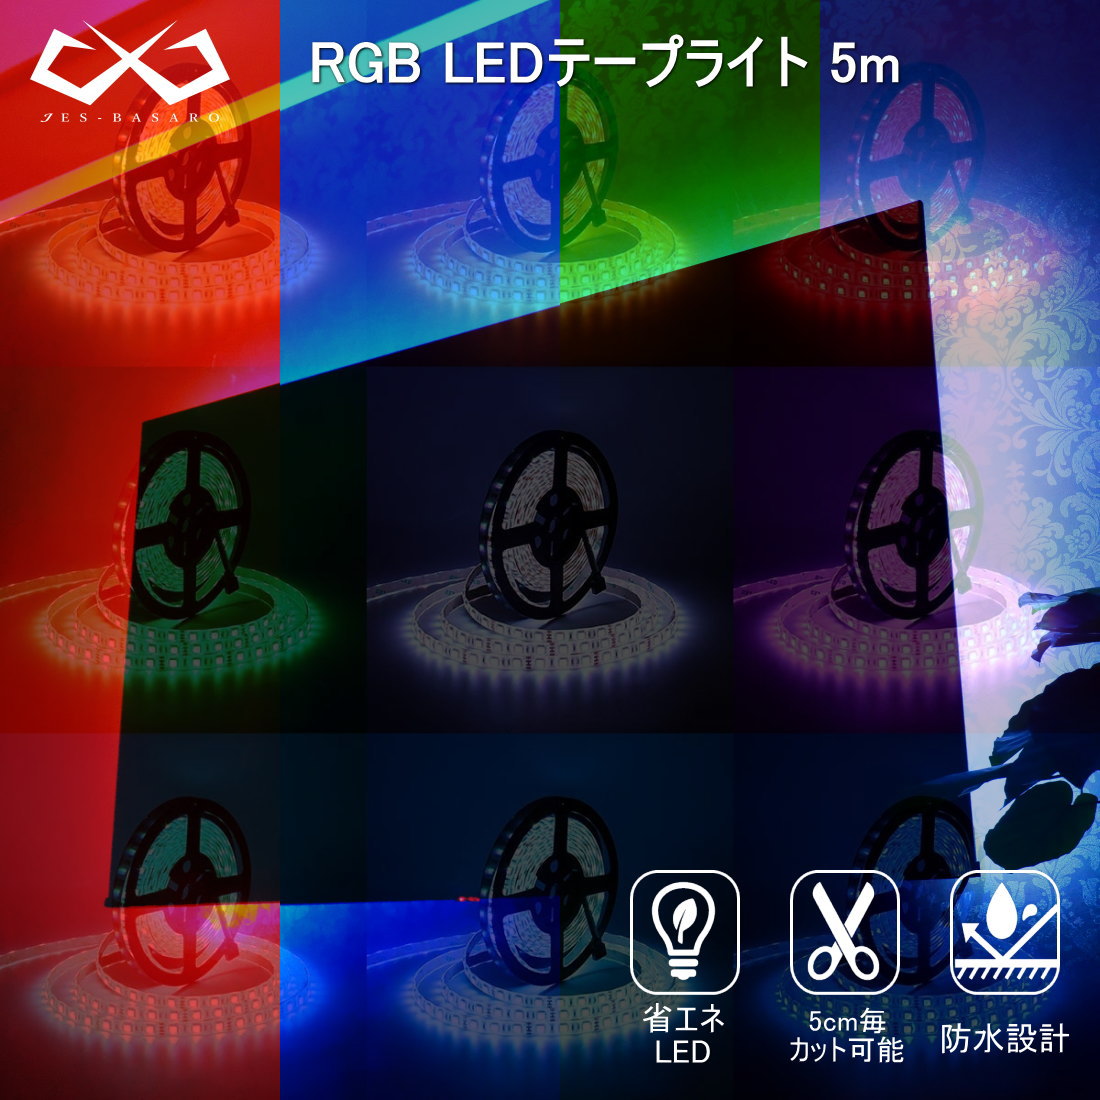 LEDテープライト 5m コントローラー コンセント rgb 防水 LEDテープ イルミネーション 連結可能 家庭用コンセント 間接照明 照明テープ 12V LED ライトテープ 100v 電飾 調光 リモコン 30色